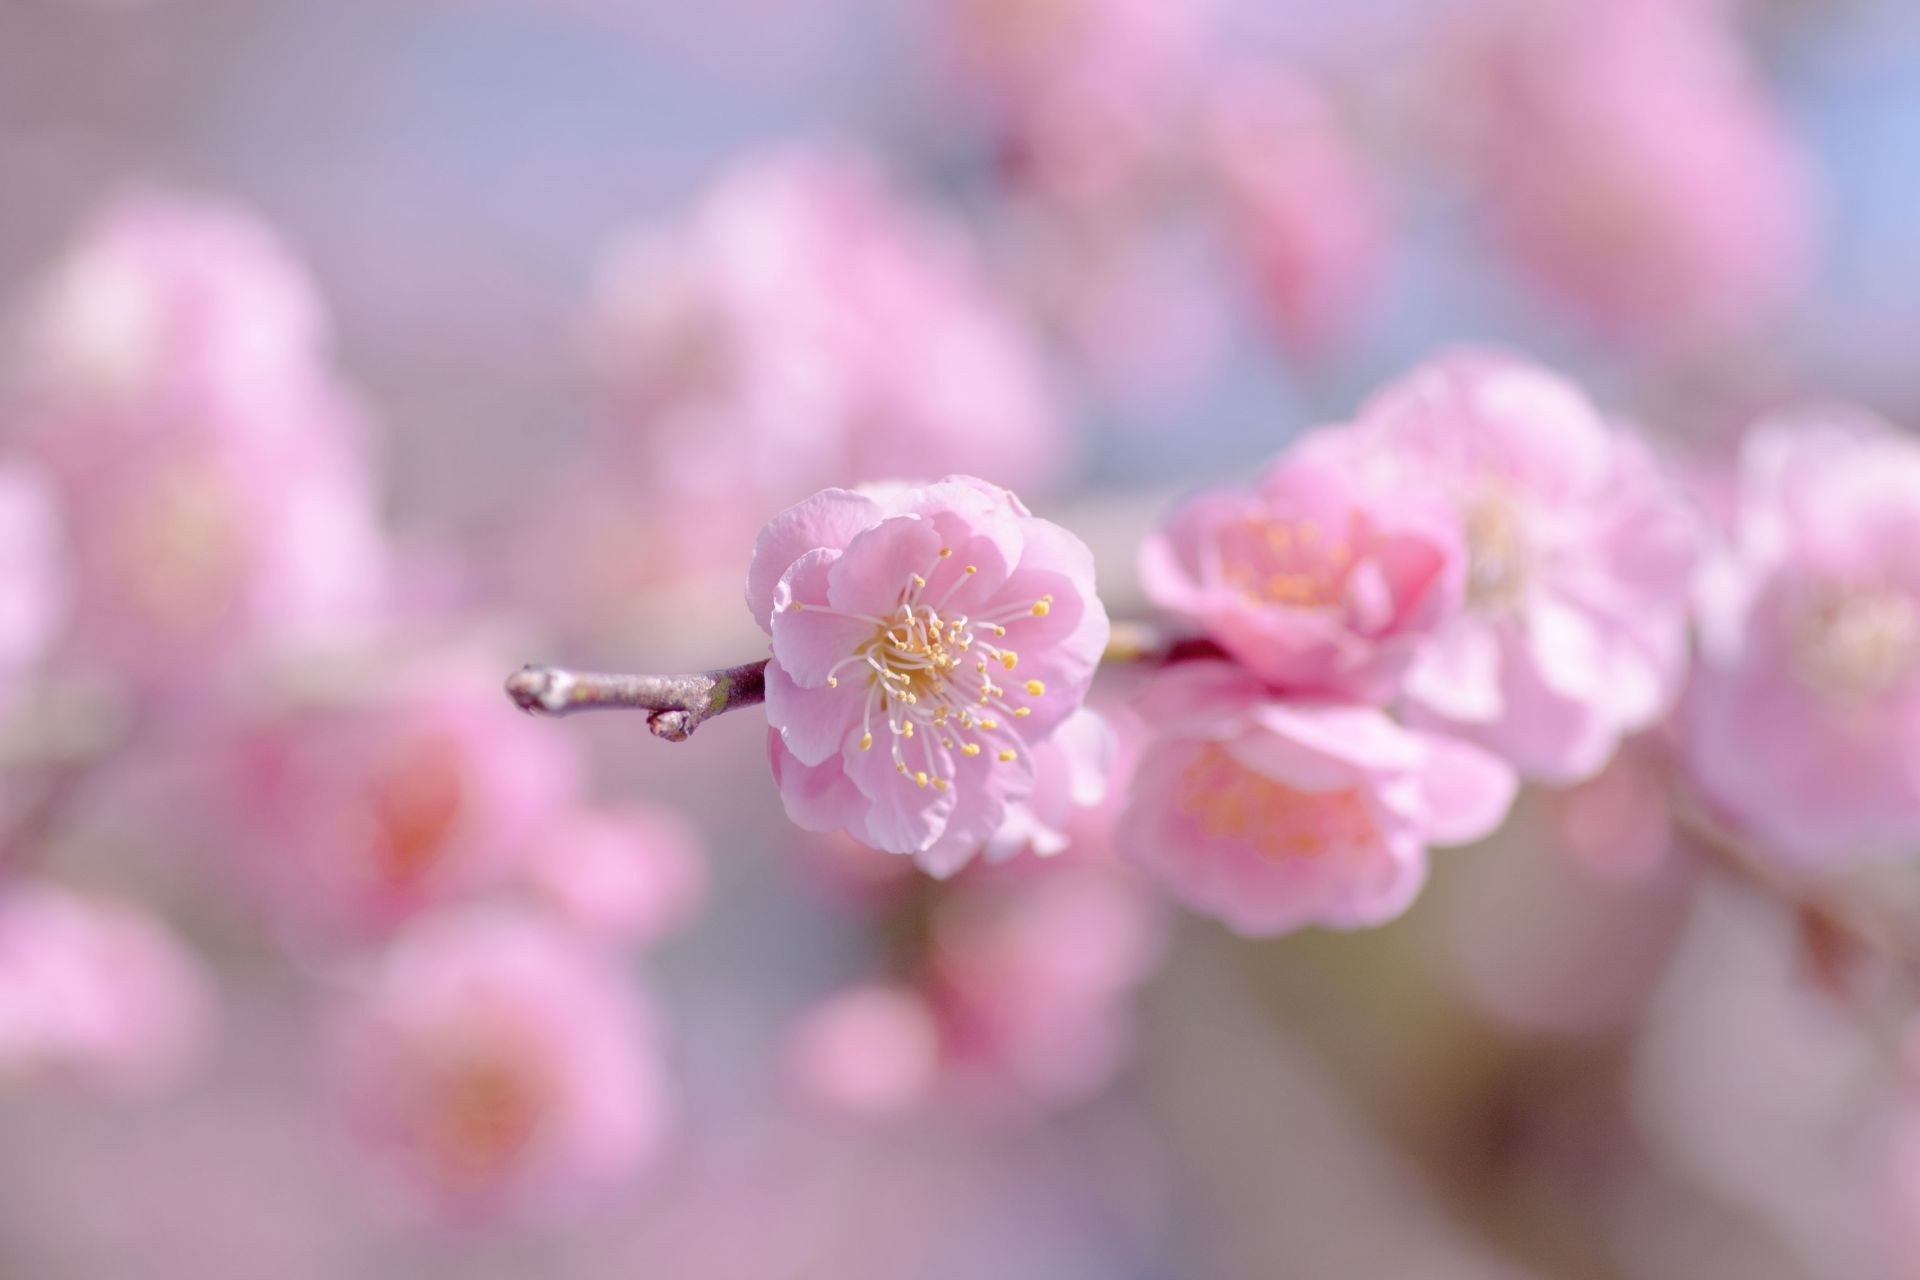 цветы цветок вишня природа флора сад филиал дерево лепесток яркий рост блюминг сезон лето лист дружище яблоко персик на открытом воздухе размытость